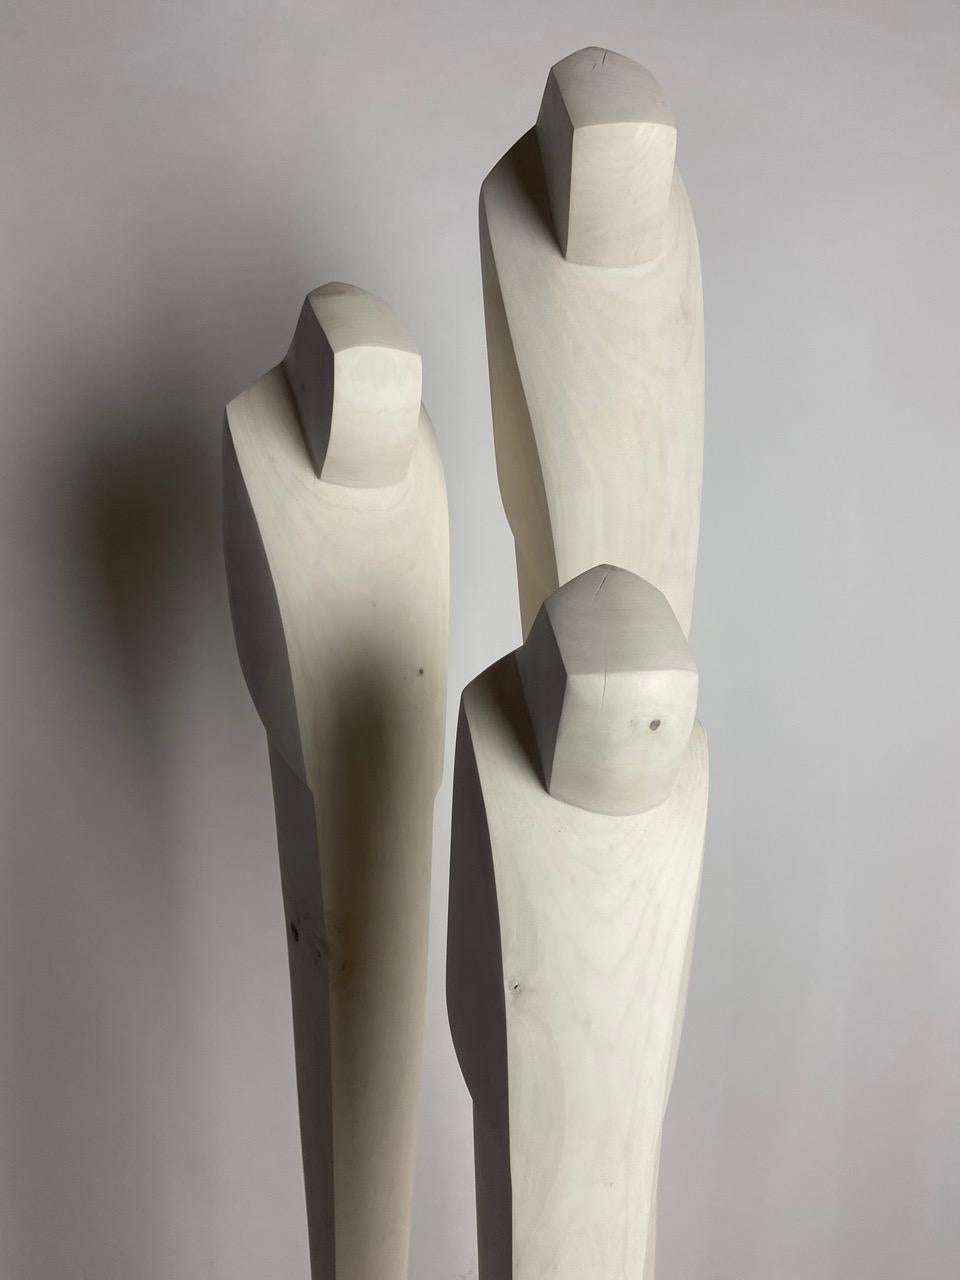 Médium : Cerisier blanchi, béton

En tant qu'artiste, je m'efforce de créer des sculptures élégantes qui capturent la véritable essence du sujet. La forme, la ligne et la surface sont utilisées comme langage visuel. La figure est abstraite en une